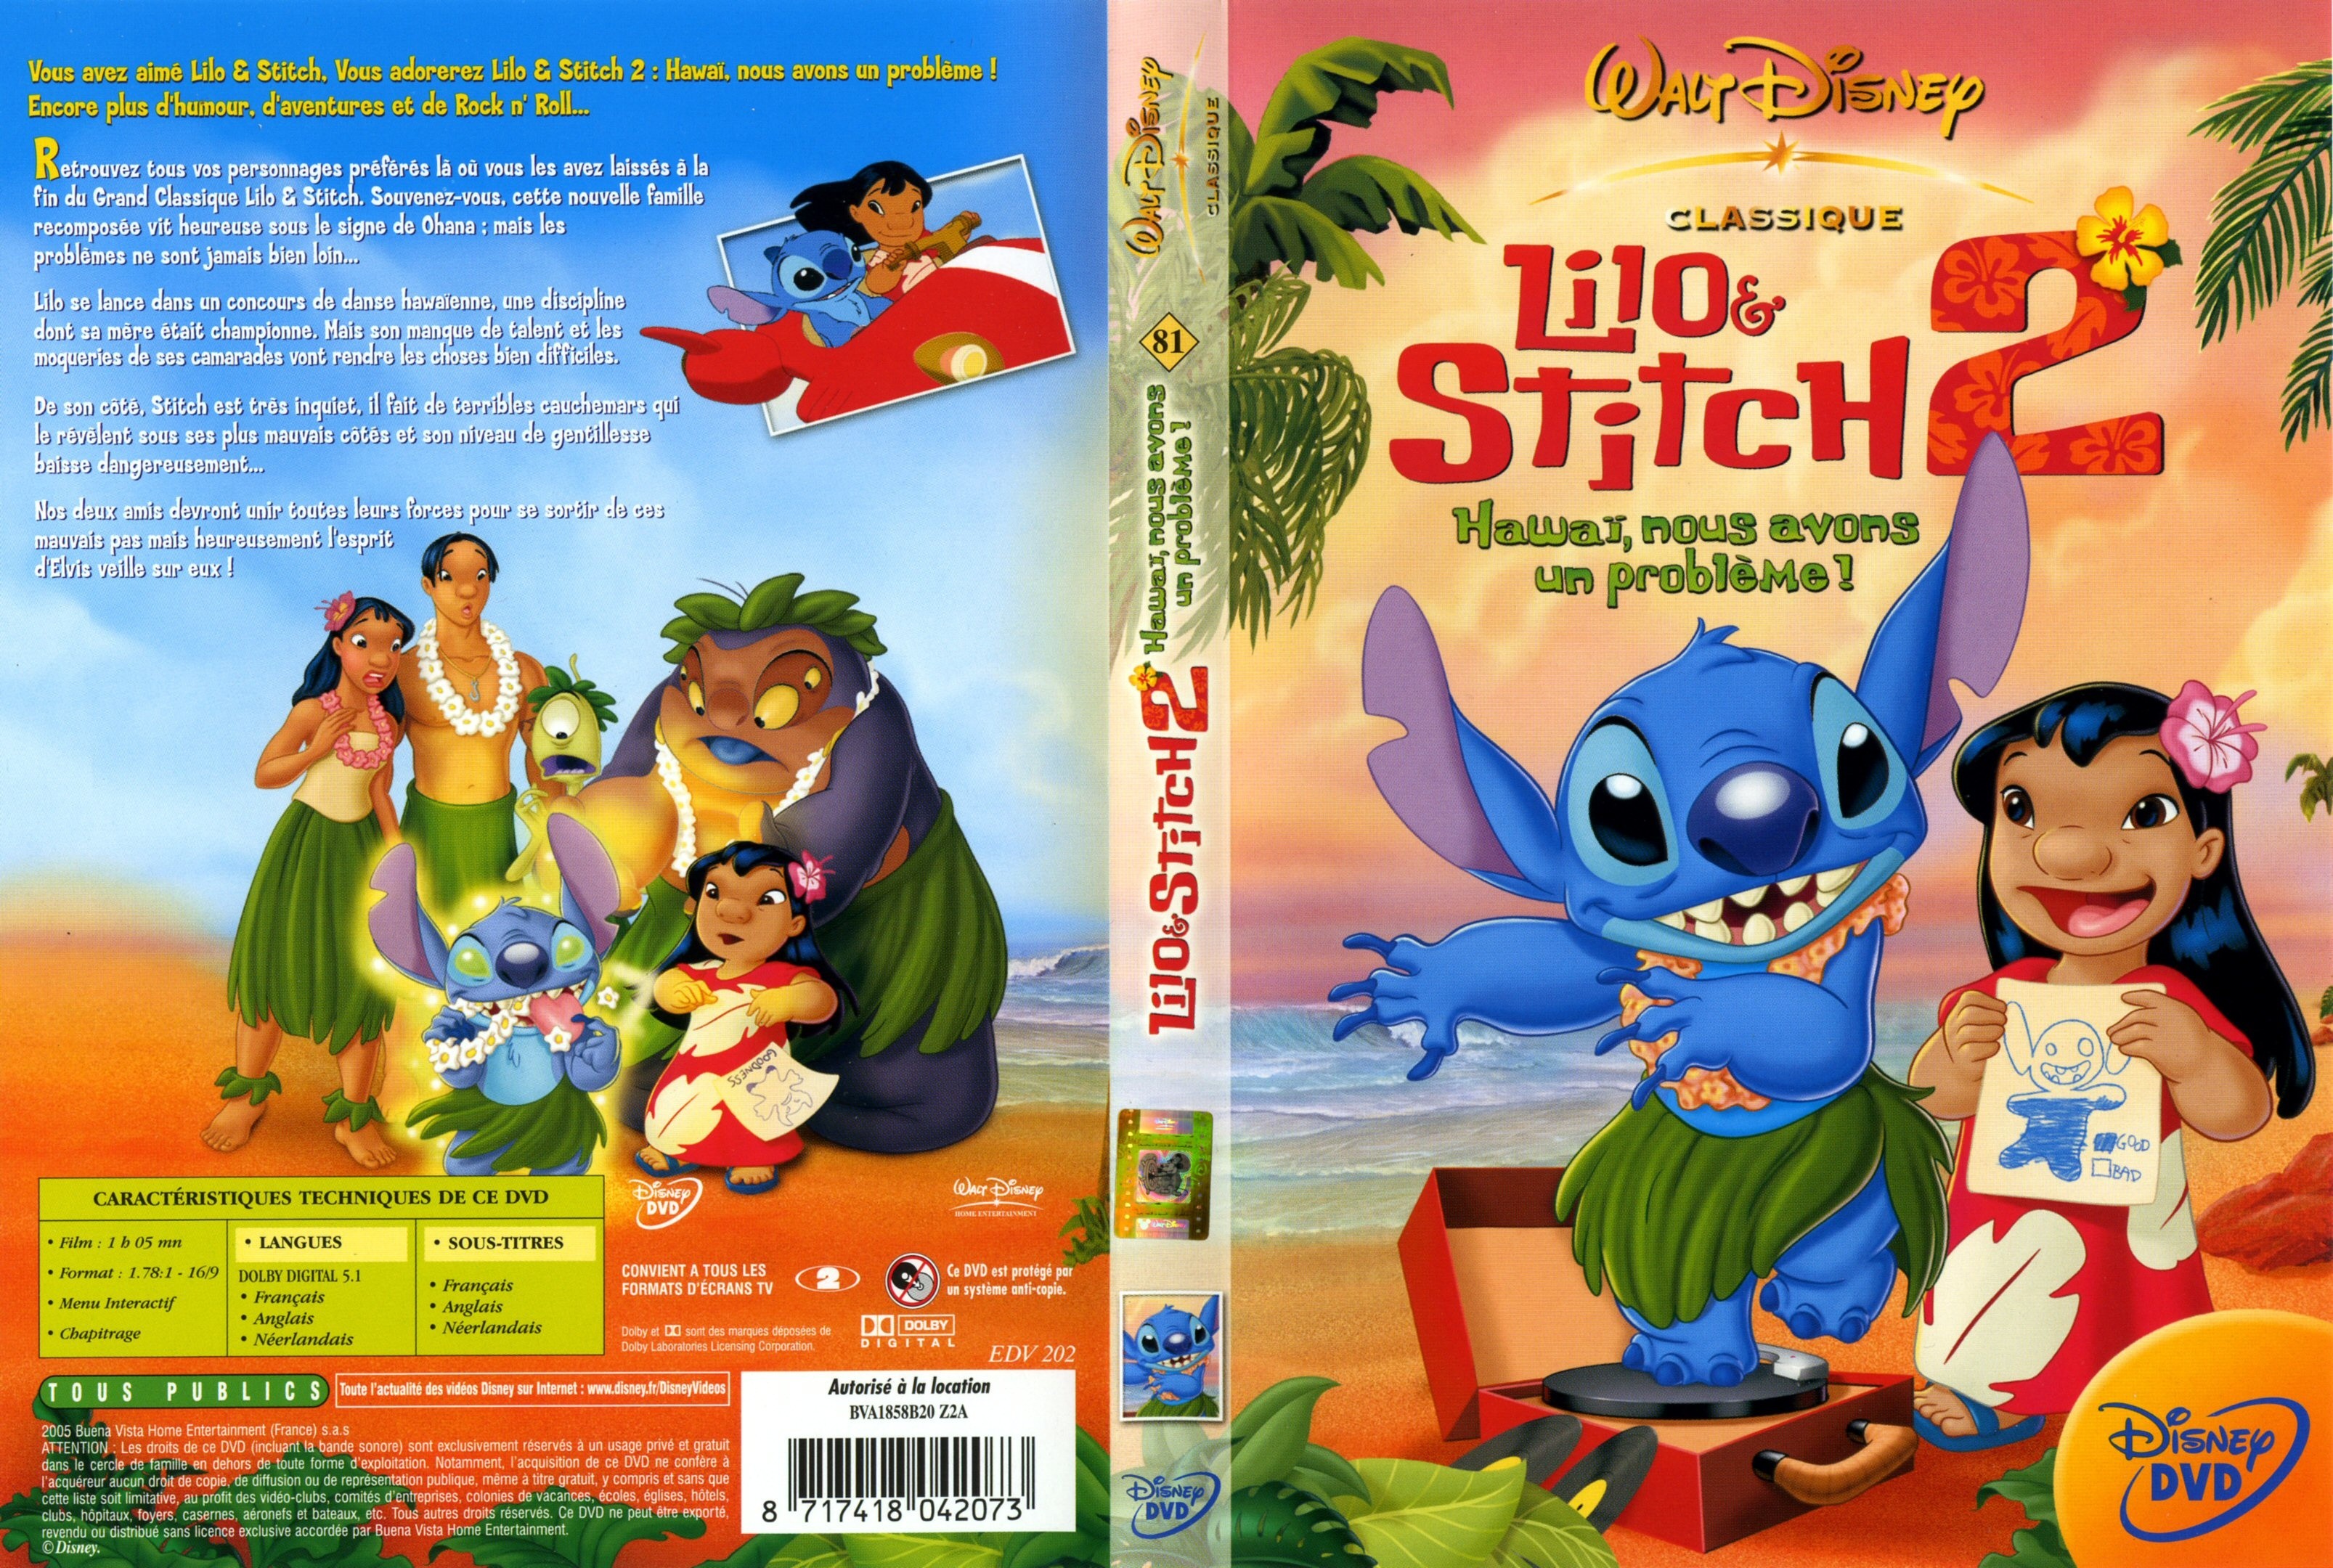  Lilo & Stitch 2